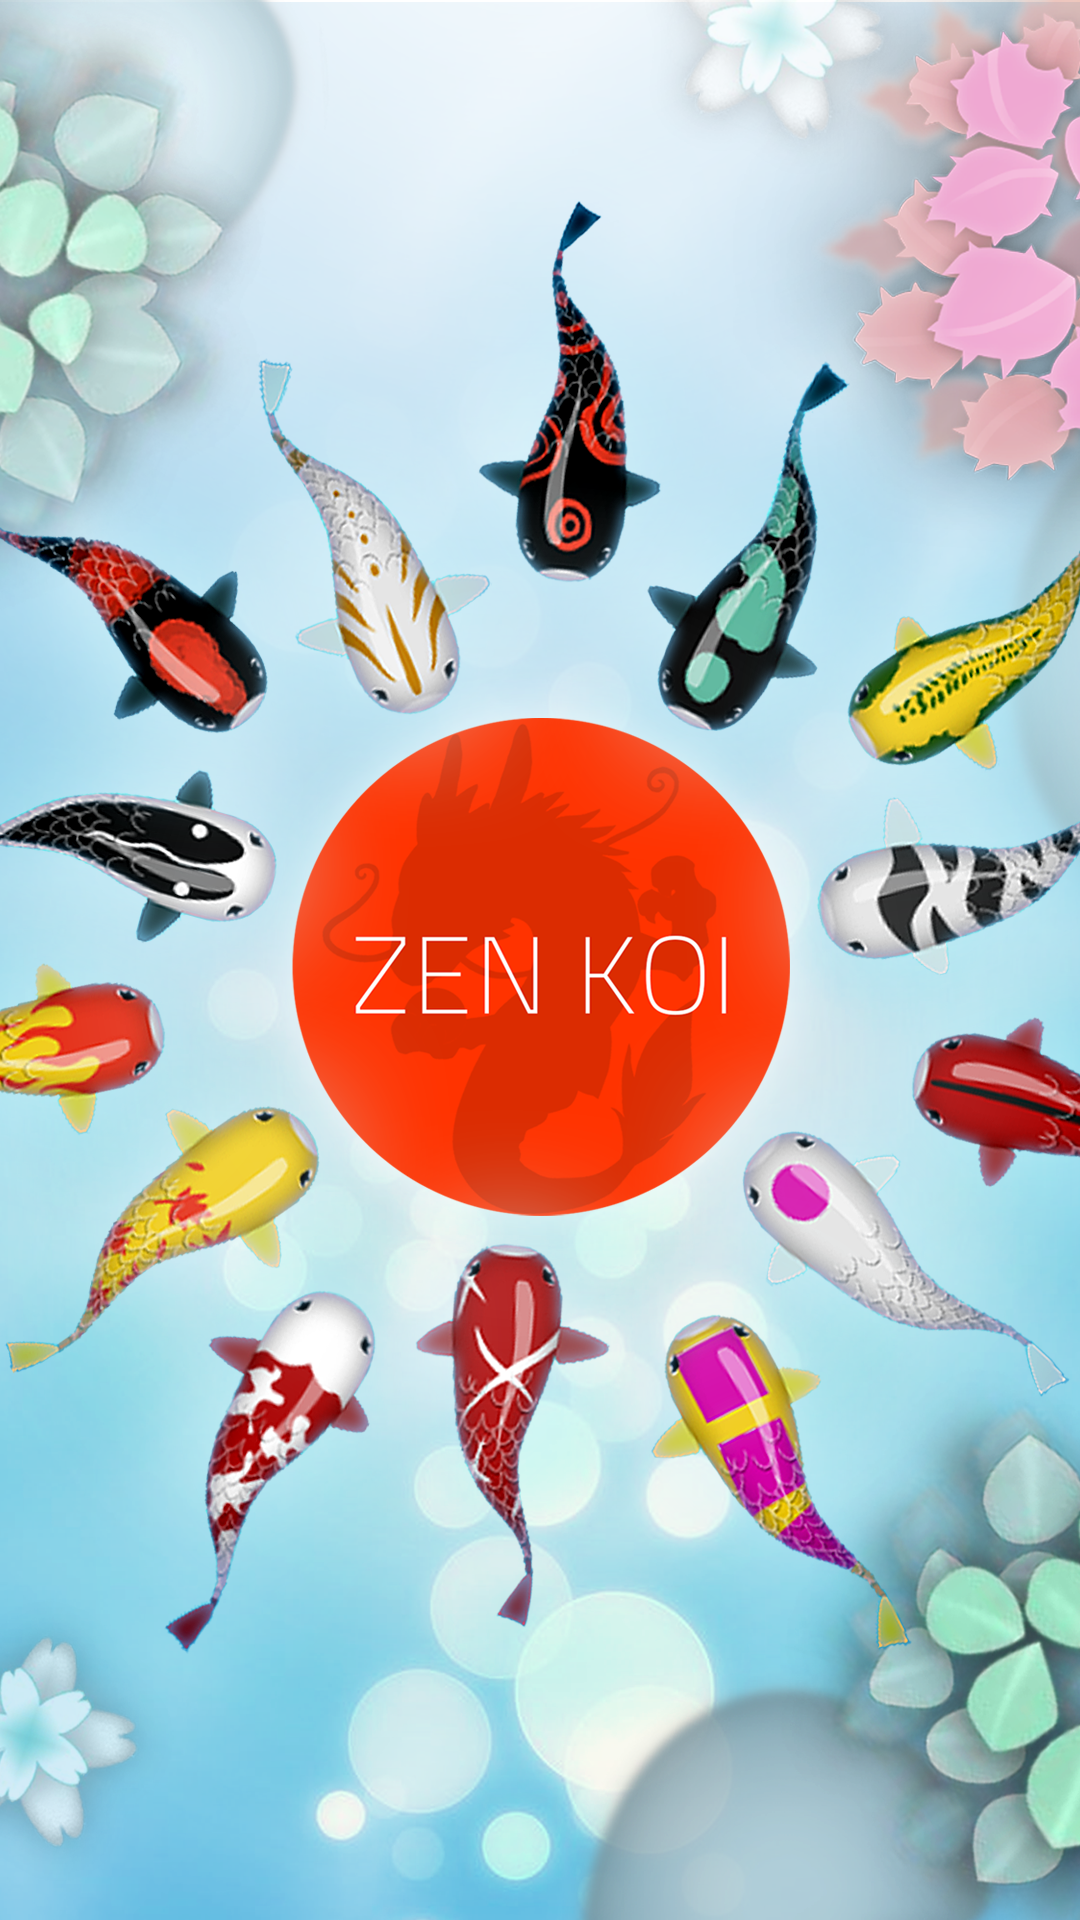 Screenshot 1 of Zen Koi Classic 禅の鯉 1.14.1